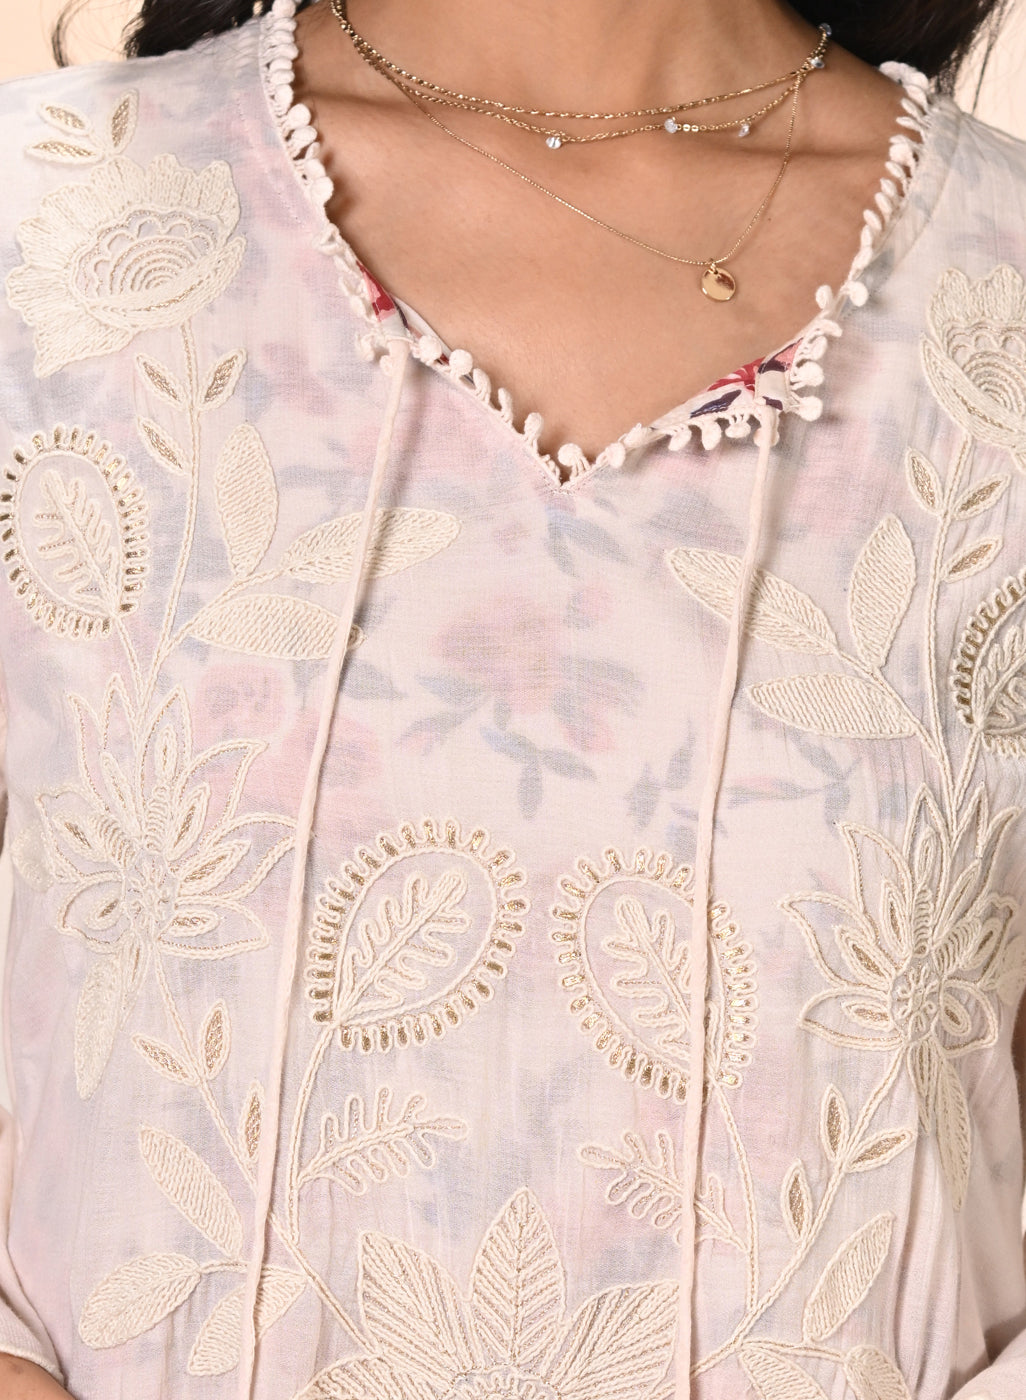 Daanya Misty Rose Embroidered Crinkled Georgette Designer Kurta for Women